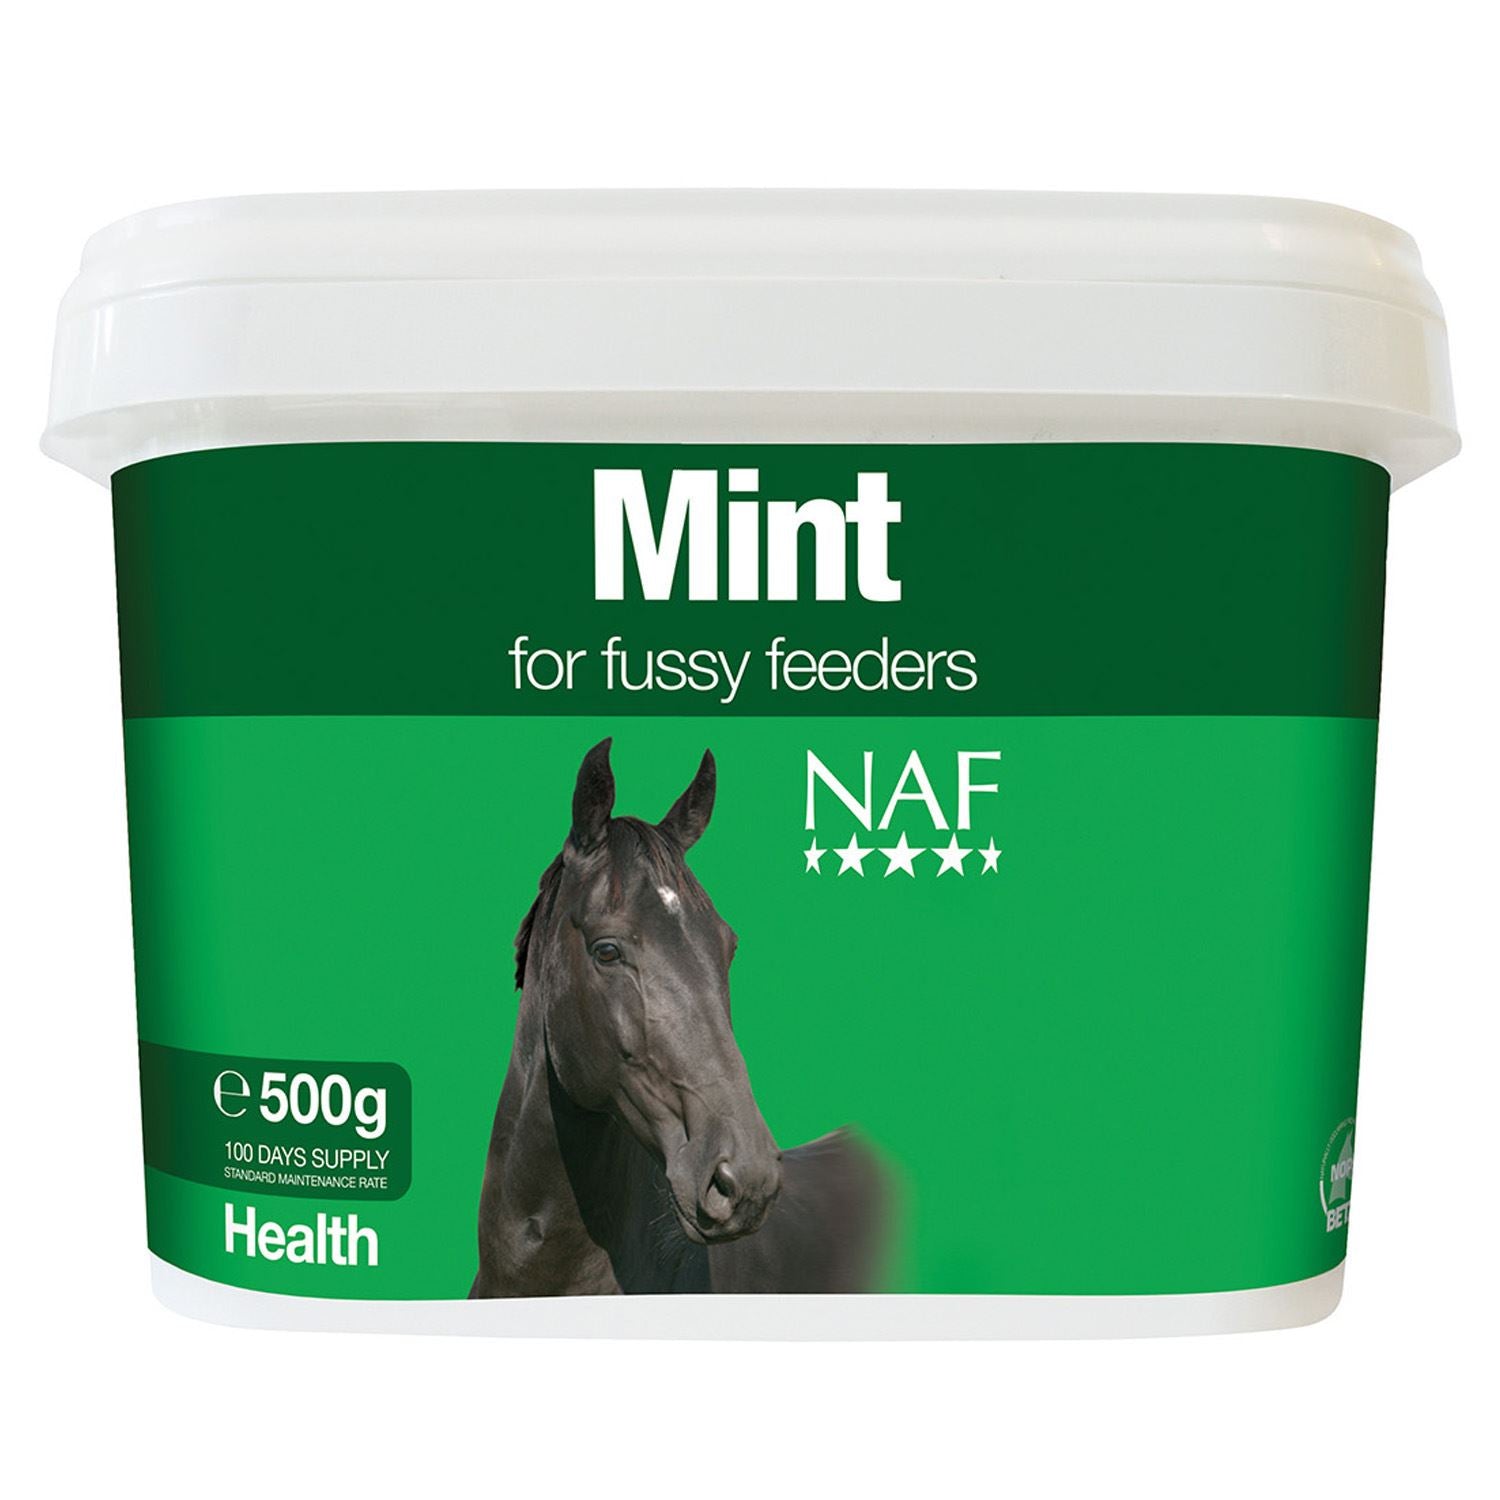 NAF Mint - Just Horse Riders